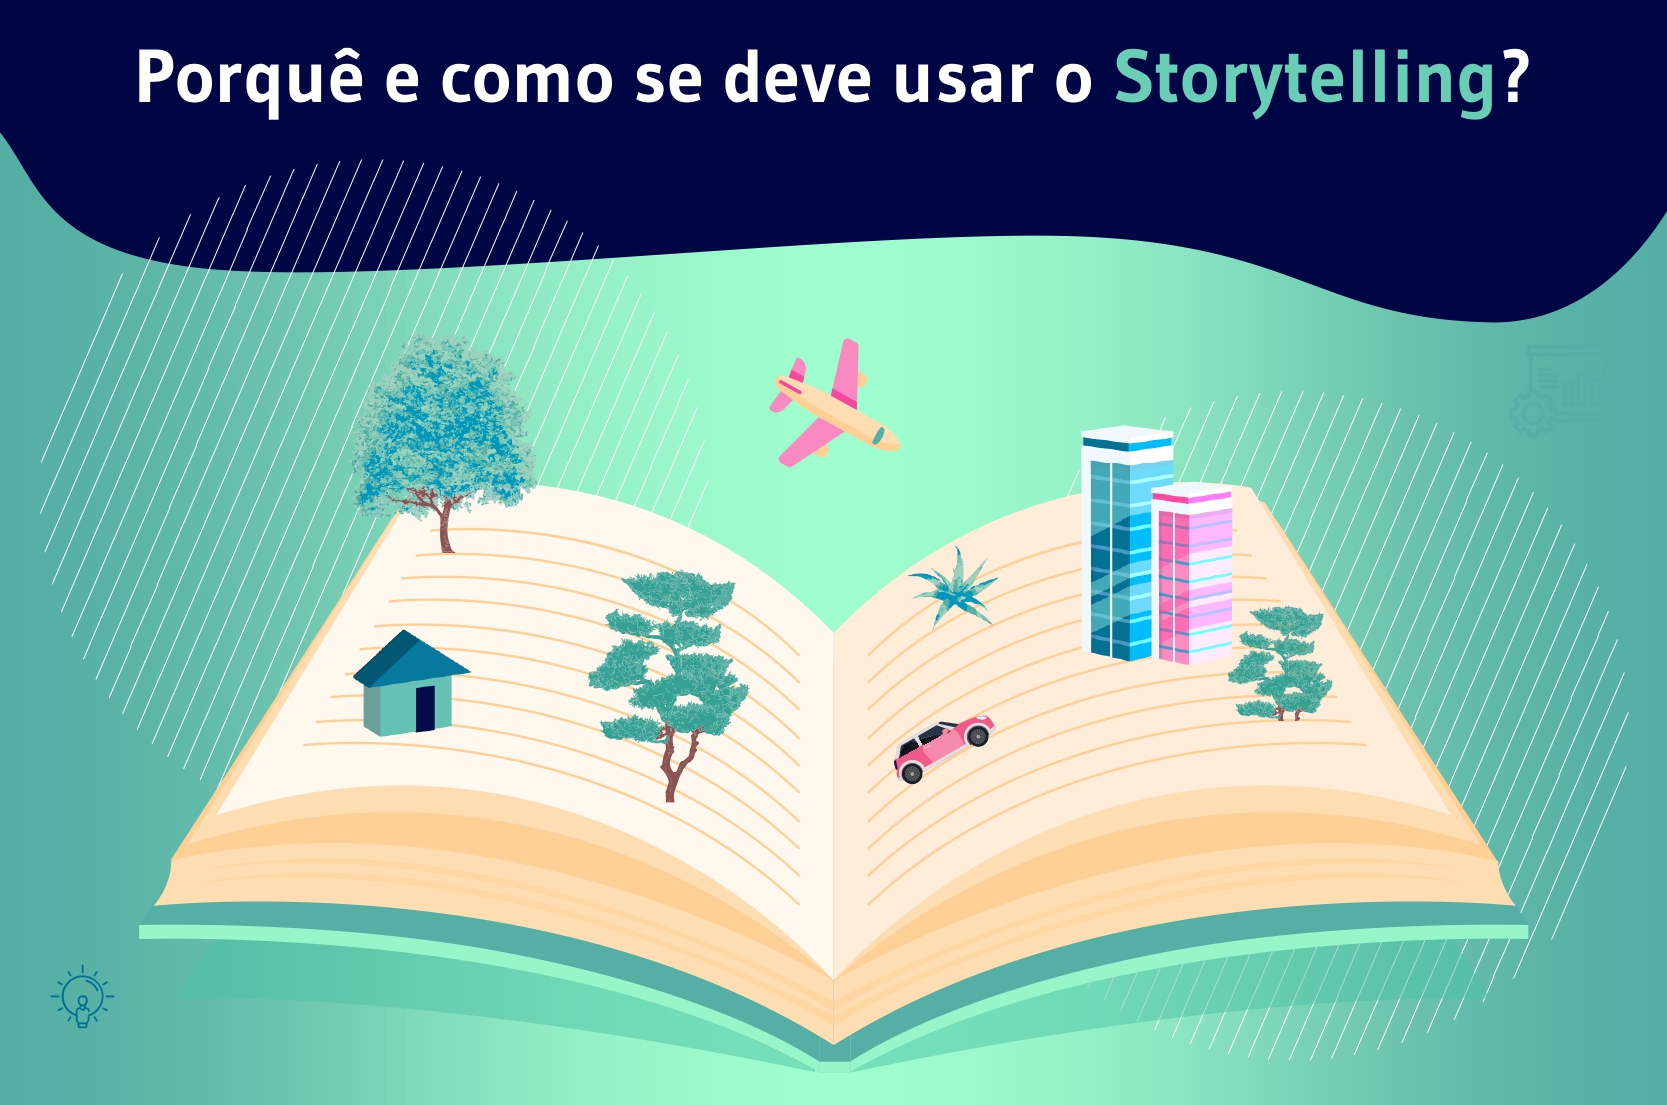 Porquê e como se deve usar o Storytelling